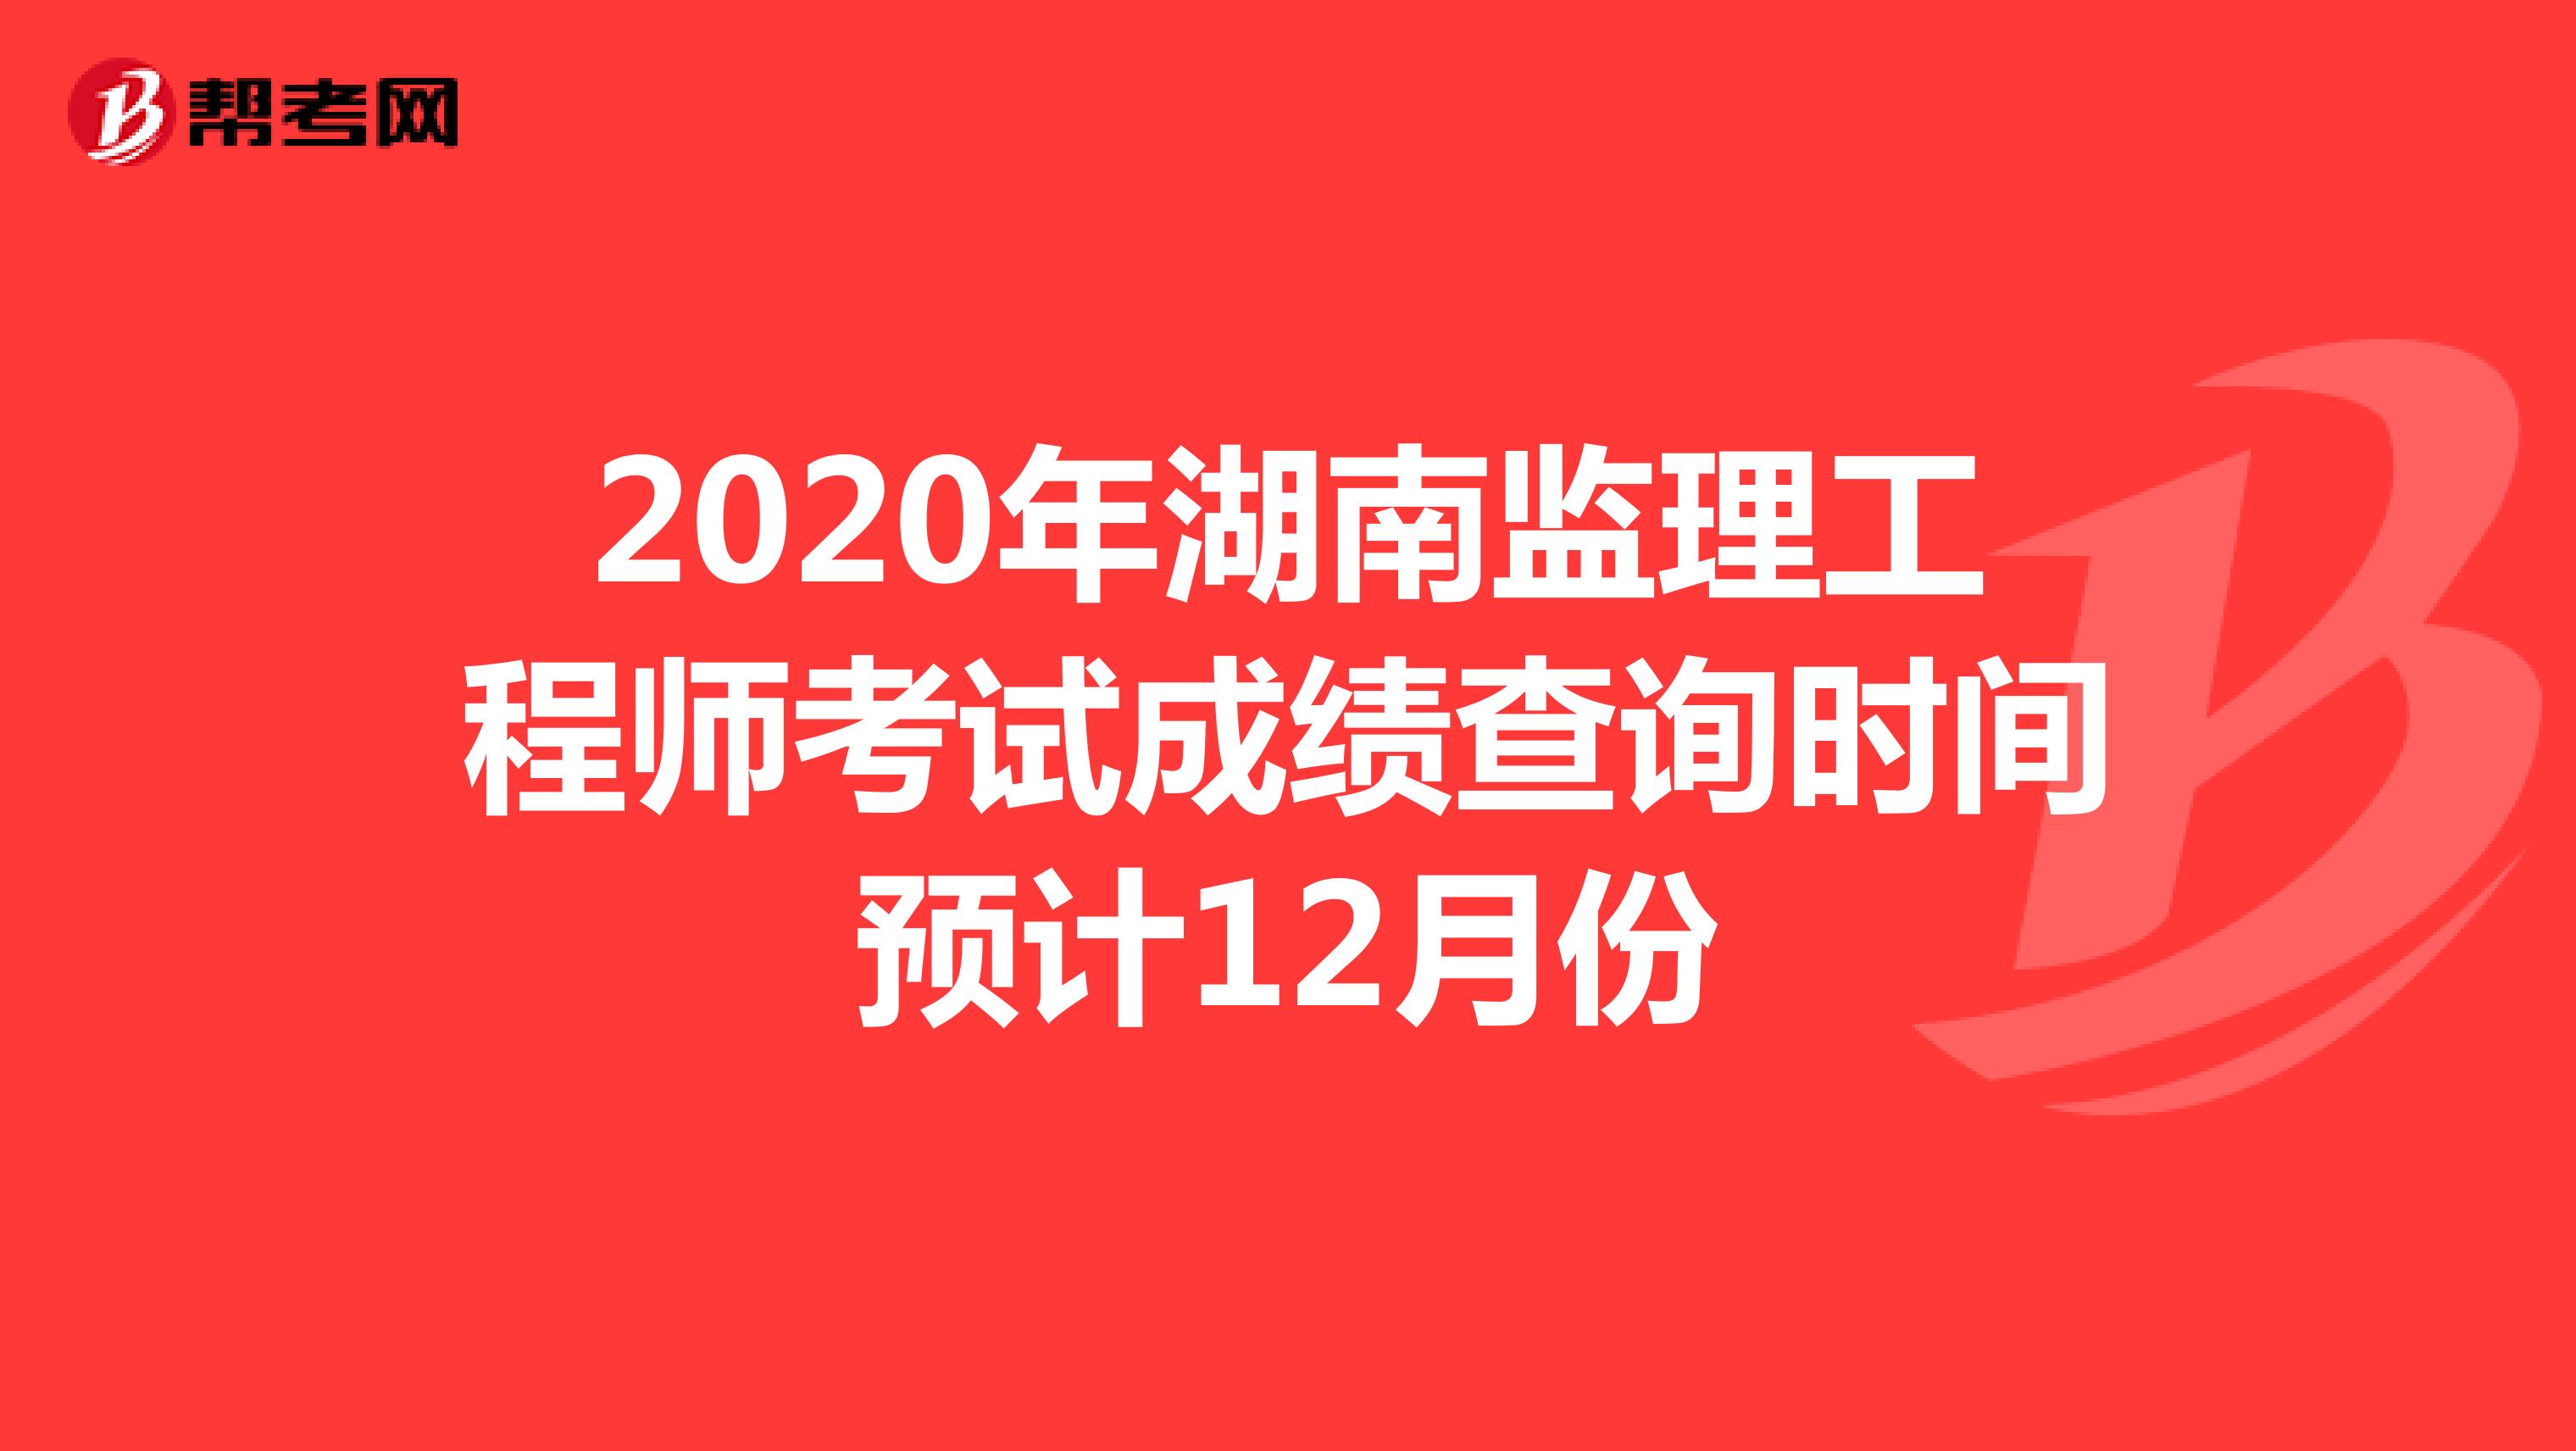 2020年湖南监理工程师考试成绩查询时间预计12月份